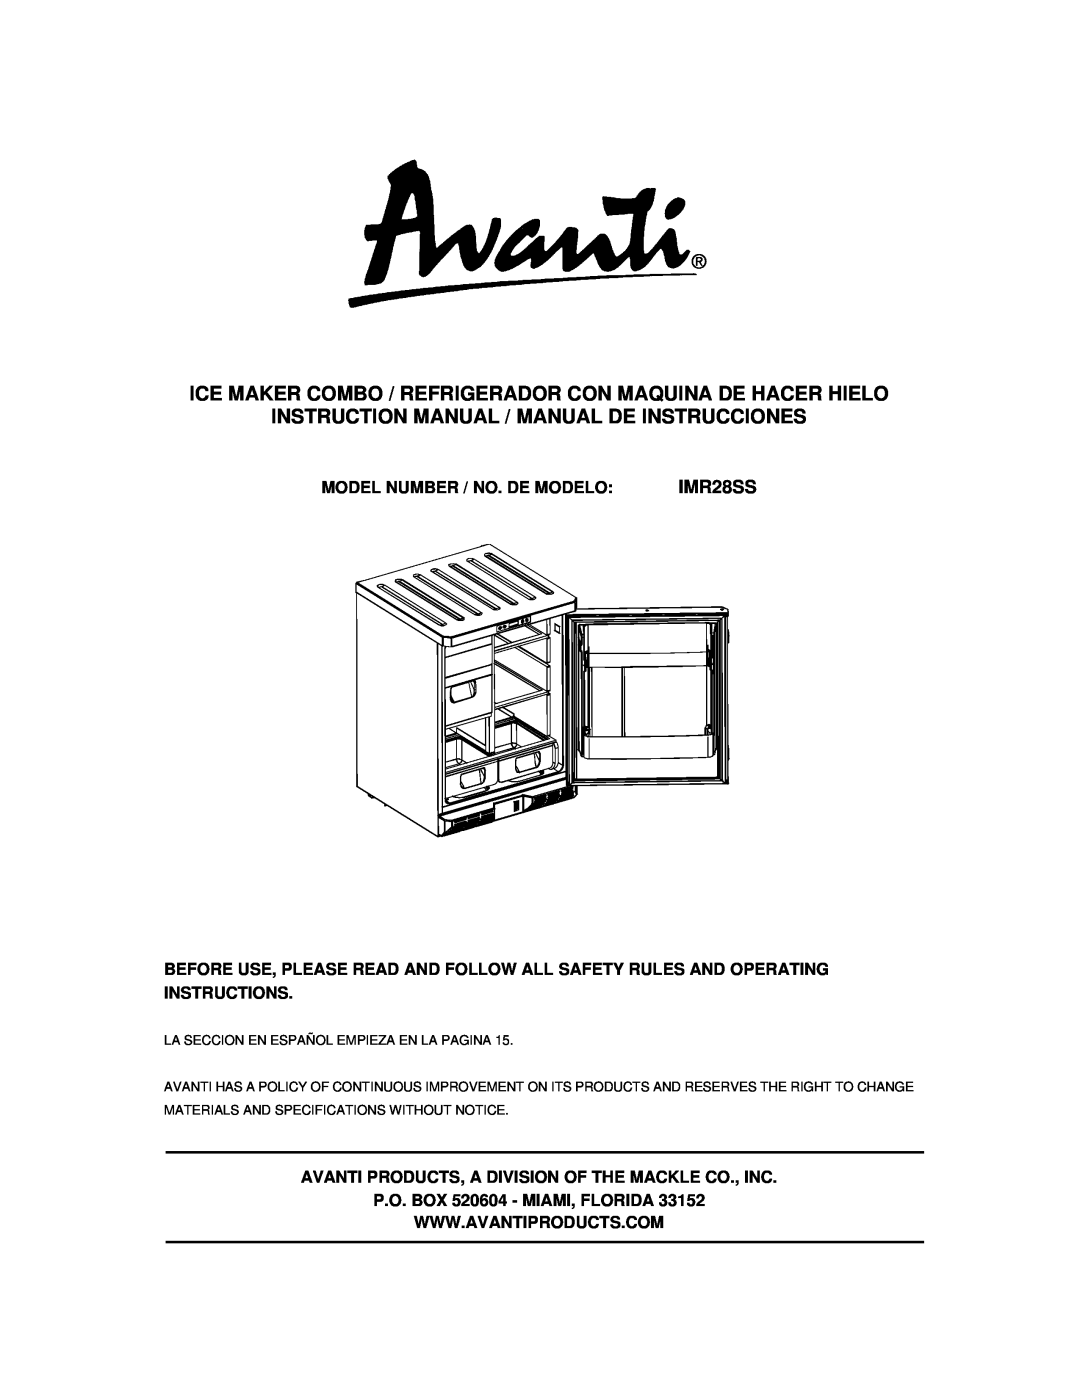 Avanti IMR28SS instruction manual Instruction Manual / Manual De Instrucciones, Model Number / No. De Modelo 